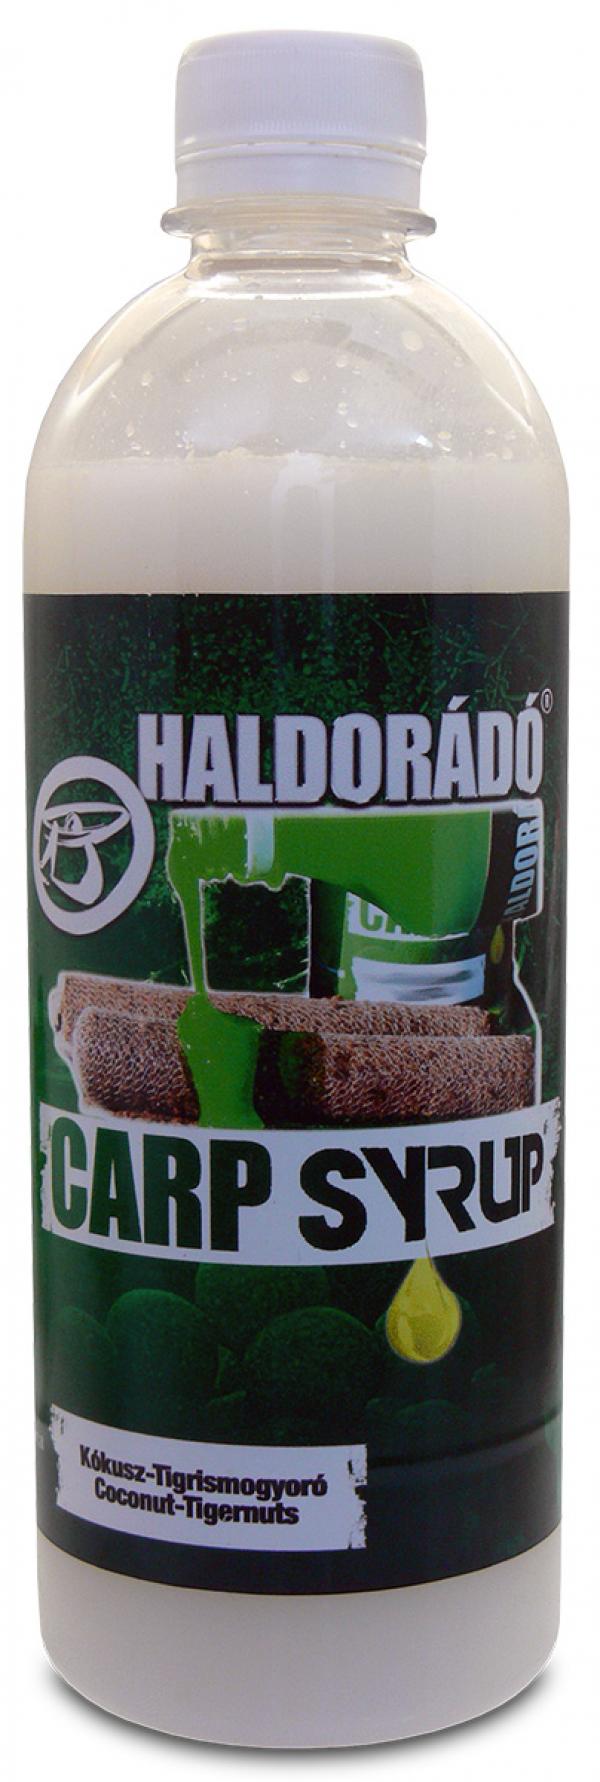 HALDORÁDÓ Carp Syrup - Kókusz & Tigrismogyoró